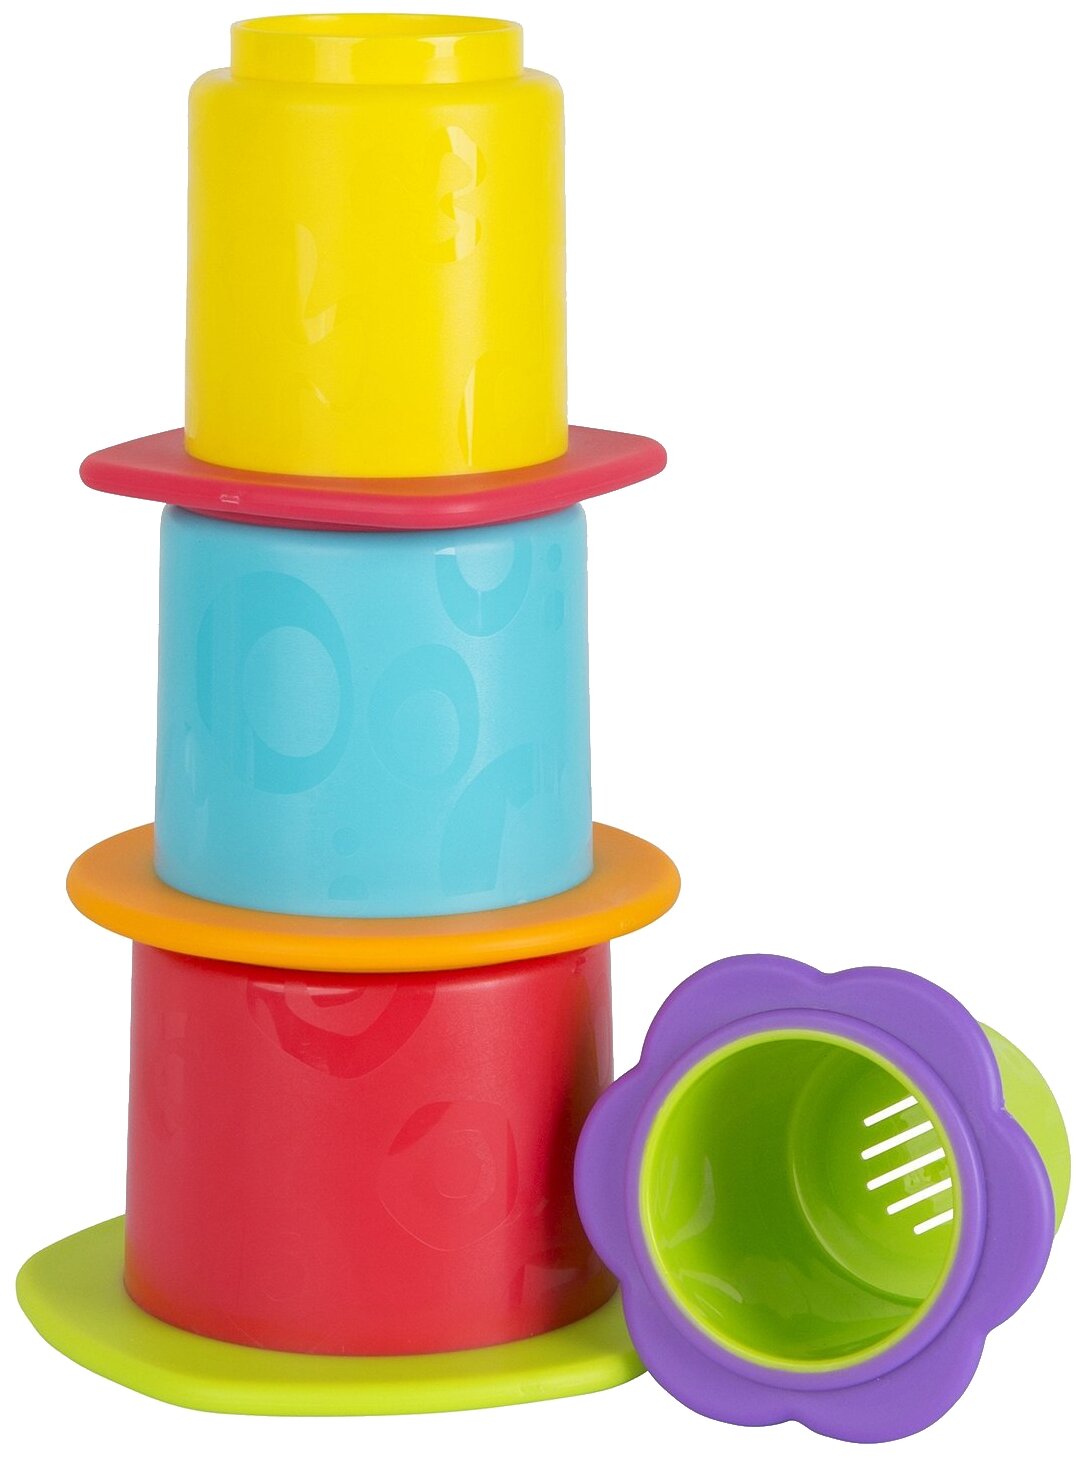 Игрушка для ванной Playgro Стакананчики (0187253), разноцветный